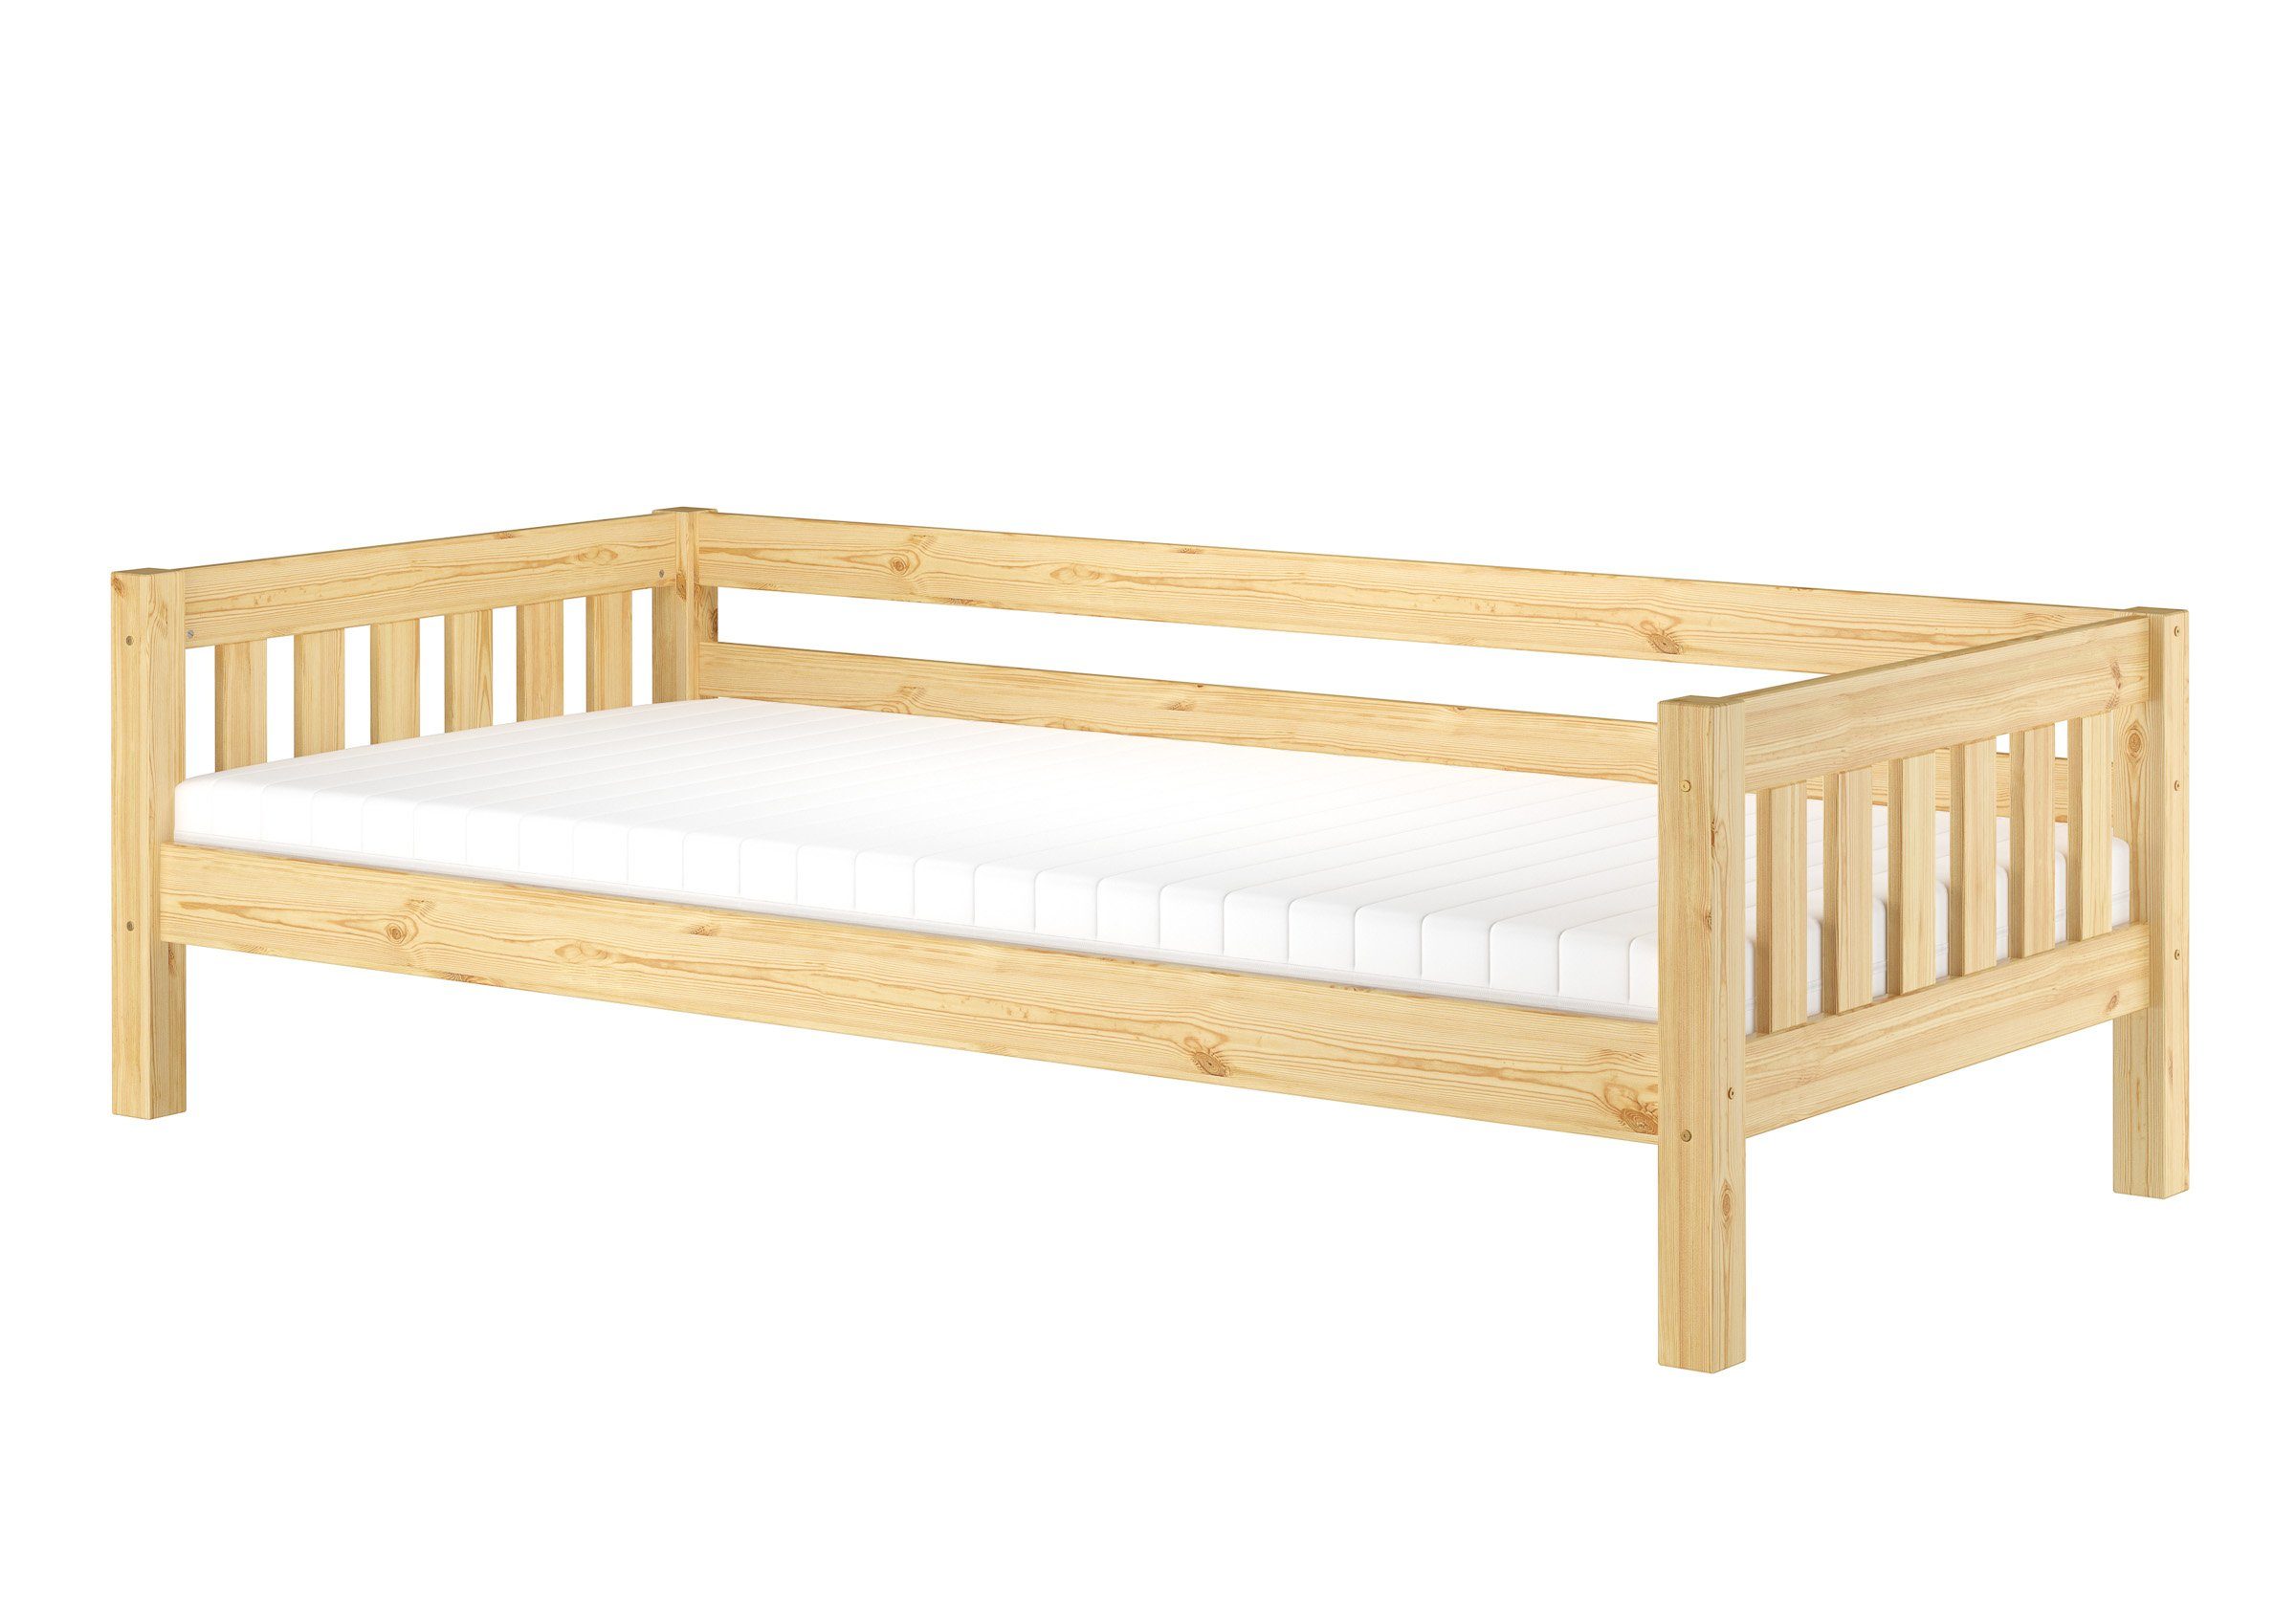 ERST-HOLZ Bett Gemütliches Kinderbett mit dreiseitiger Sicherung 90x200 cm Kiefer, Kieferfarblos lackiert